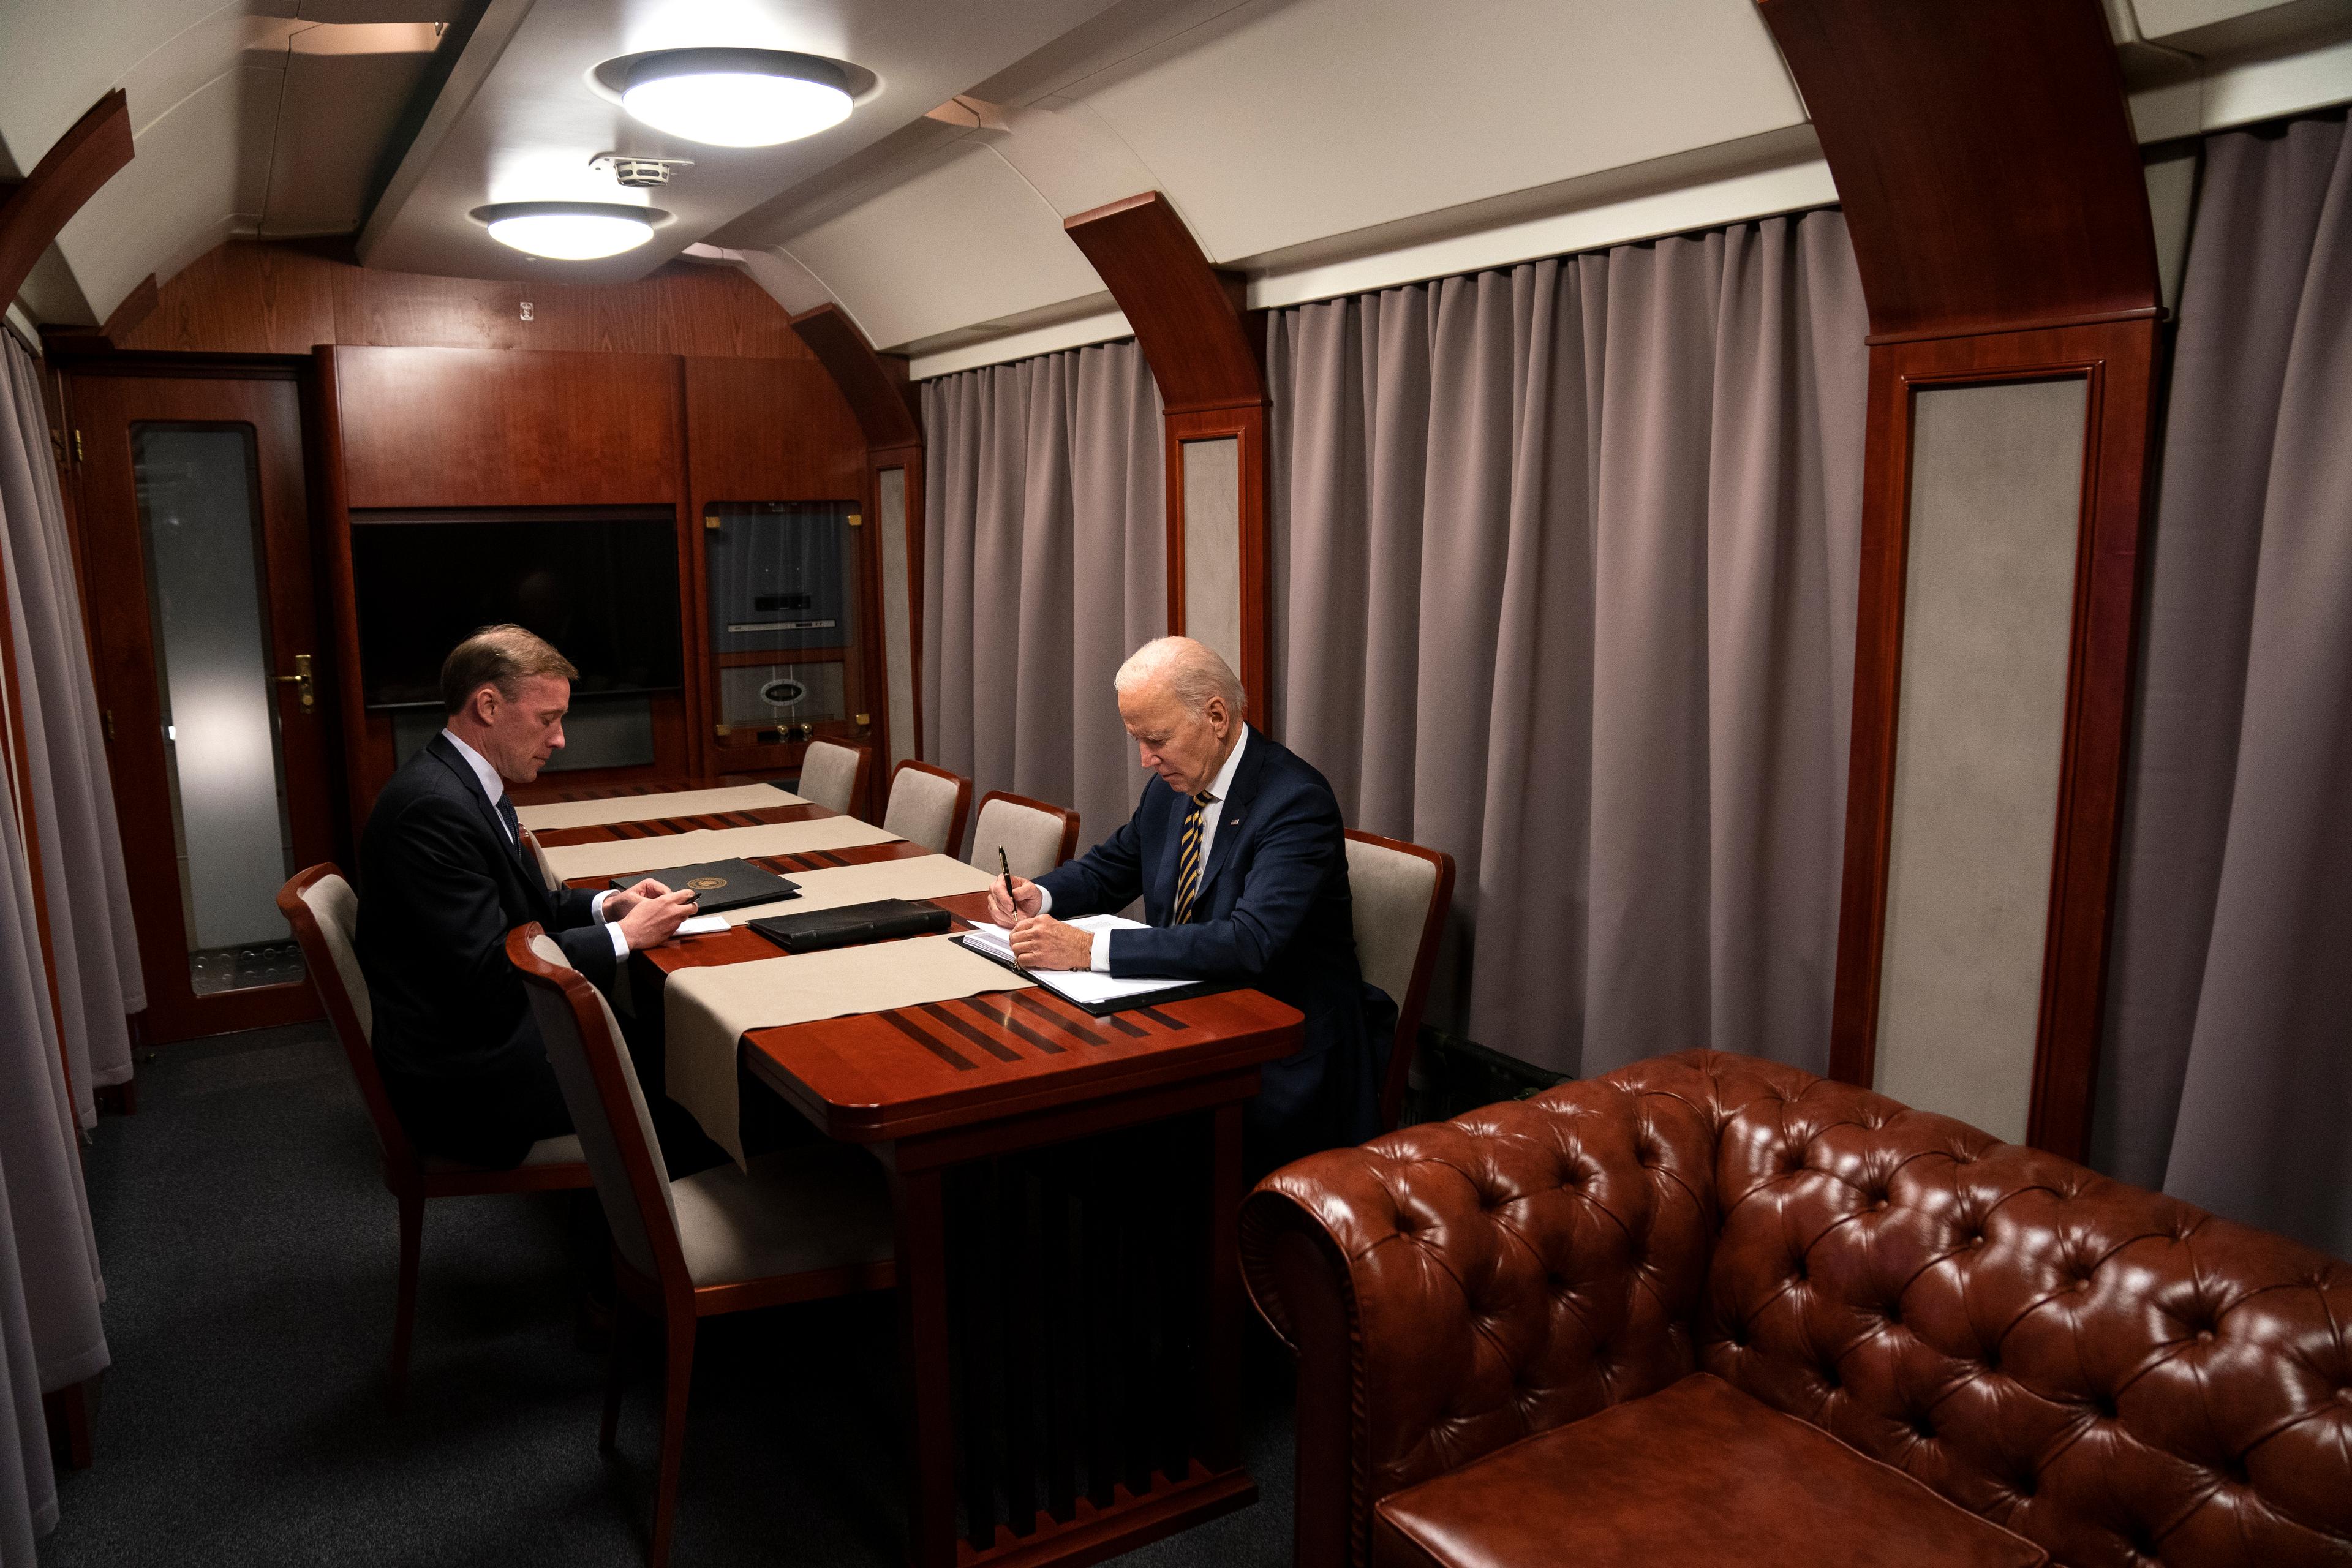 Joe Biden w przedziale salonowym w towarzystwie członka swojego sztabu